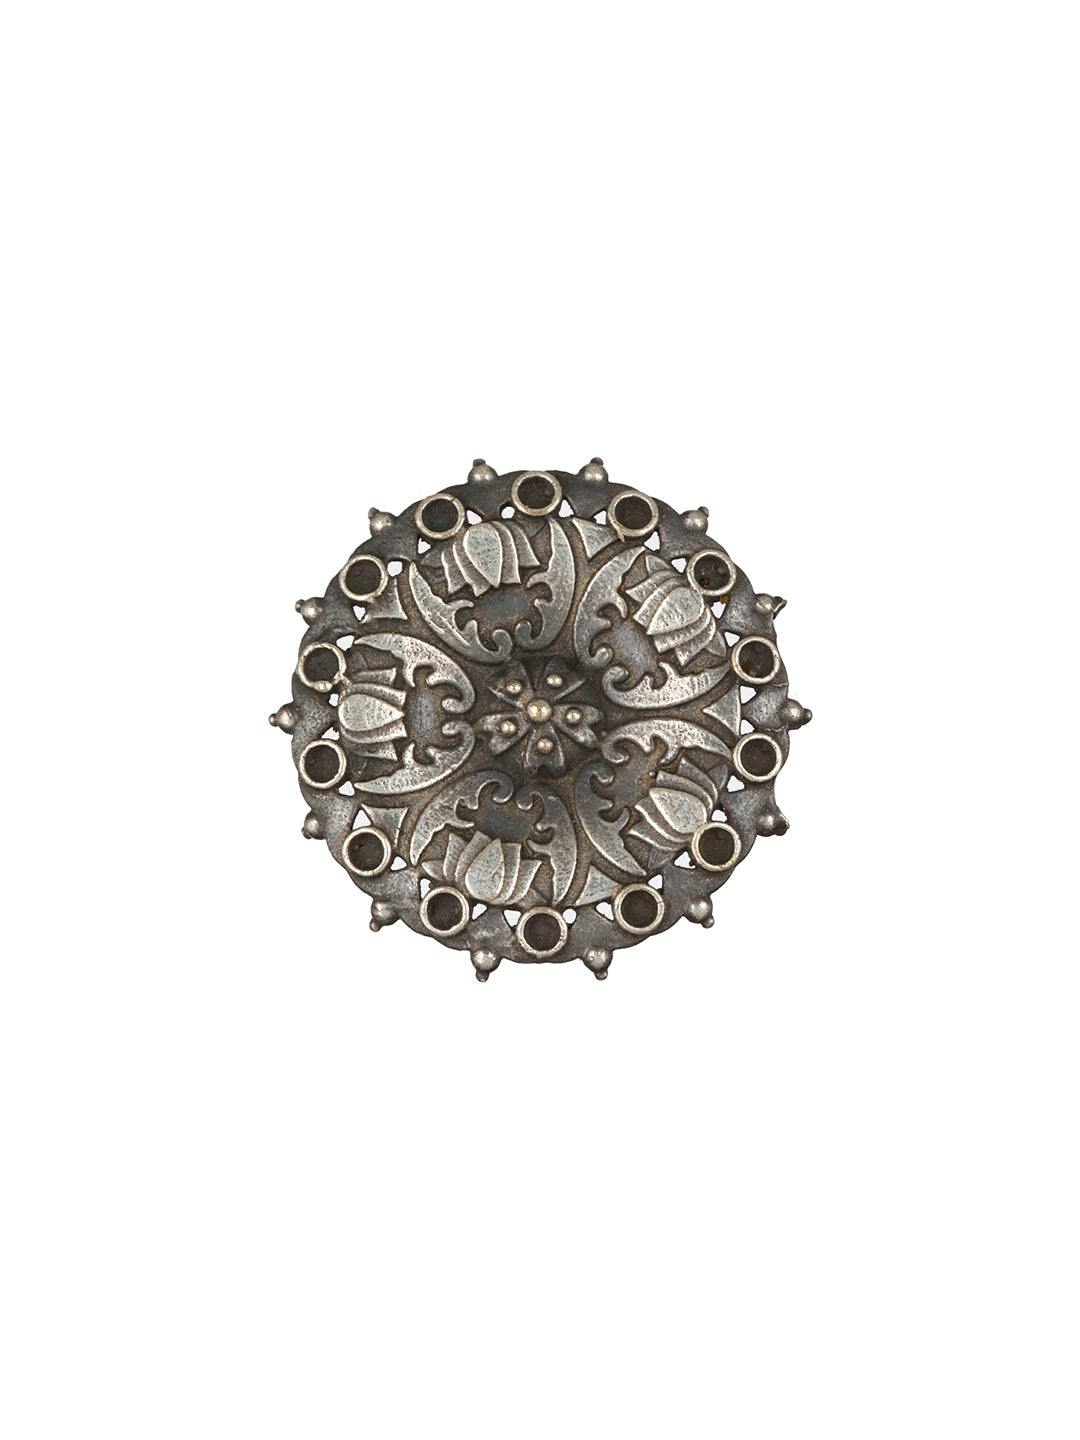 Priyaasi Big Flower Round Oxidised Silver-Plated Ring